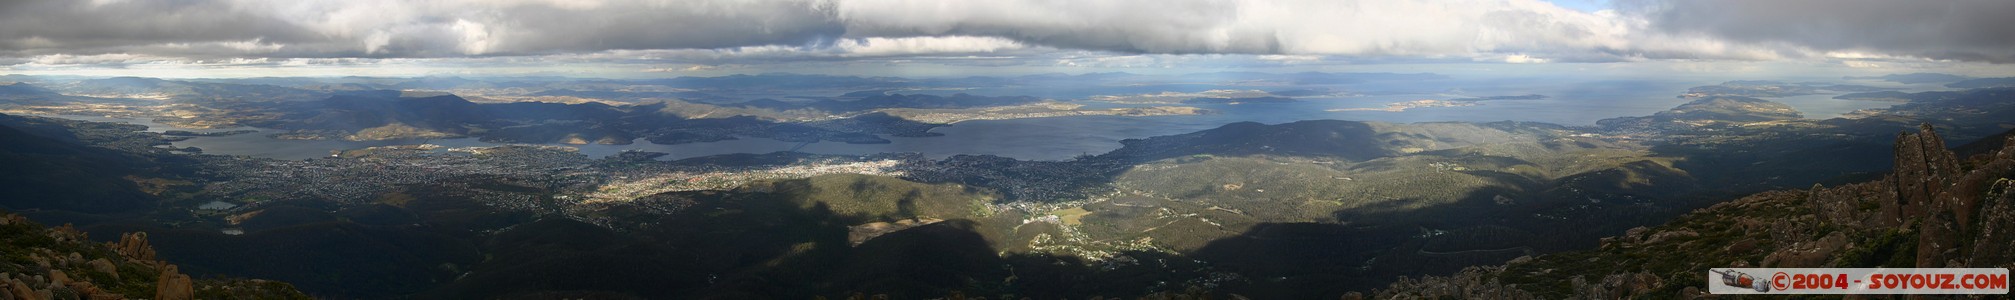 Mt Wellington - vue panoramique sur Hobart
Mots-clés: panorama